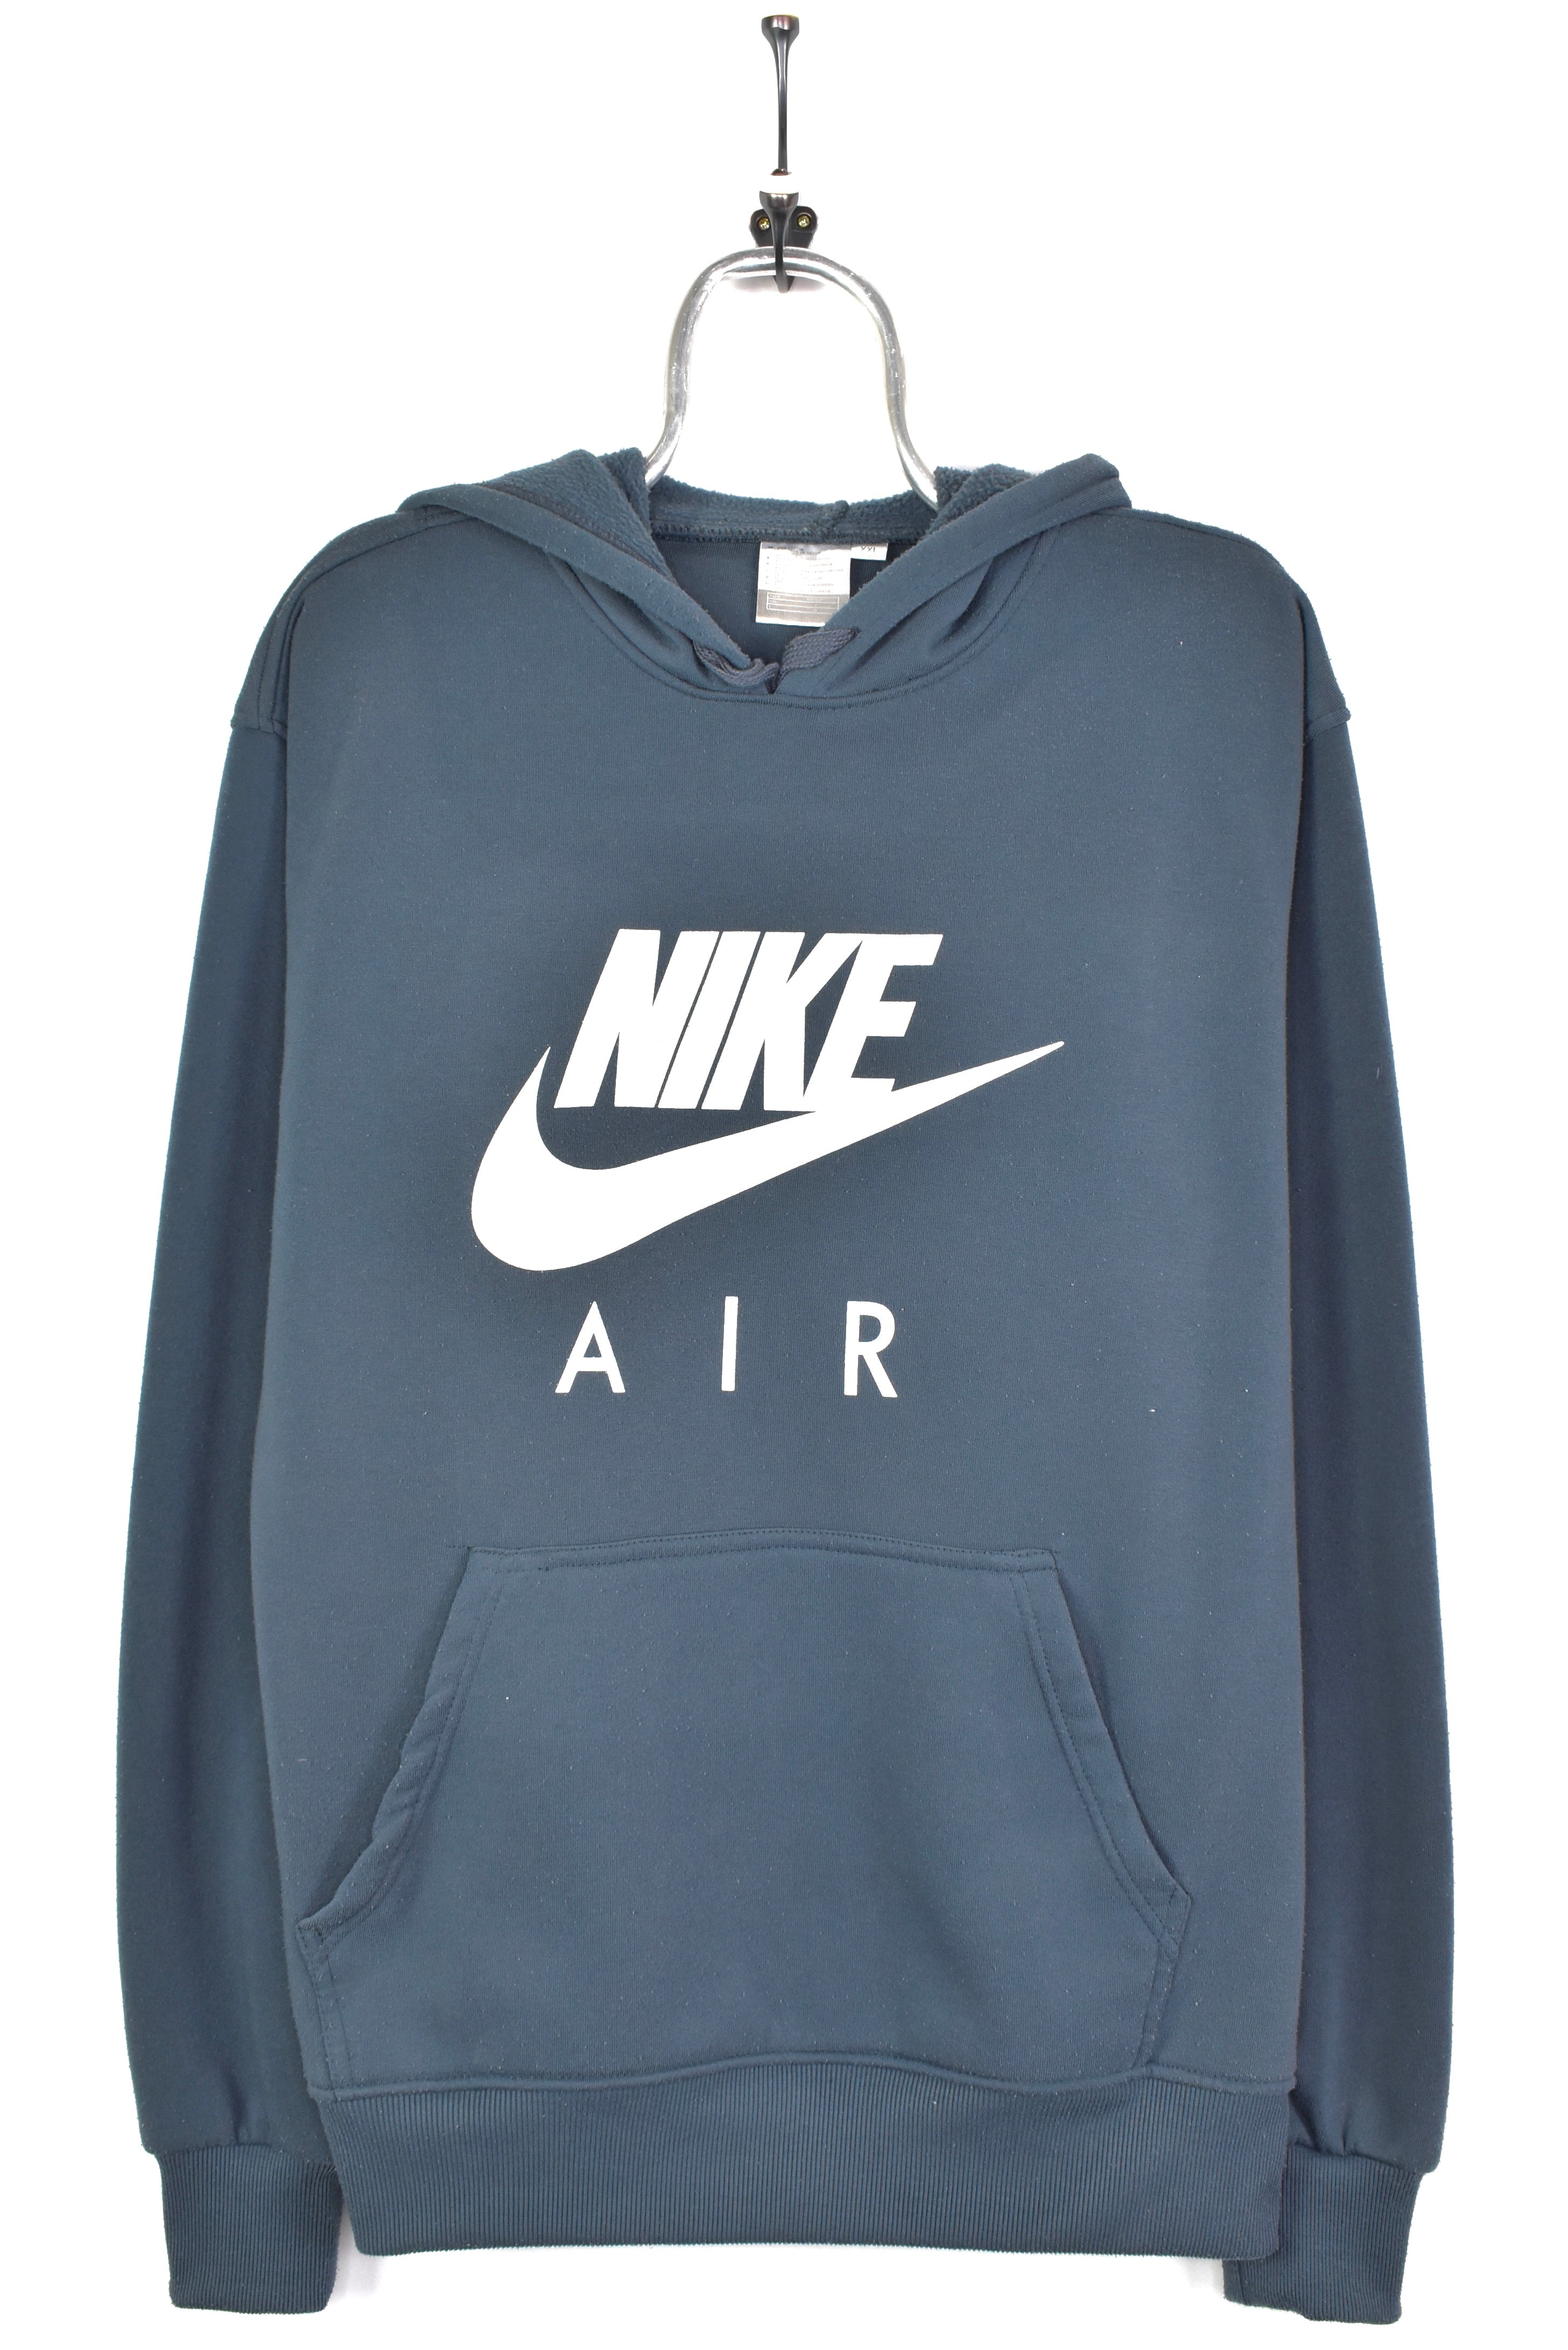 Vintage Nike hoodie, grey graphic sweatshirt - AU XL NIKE